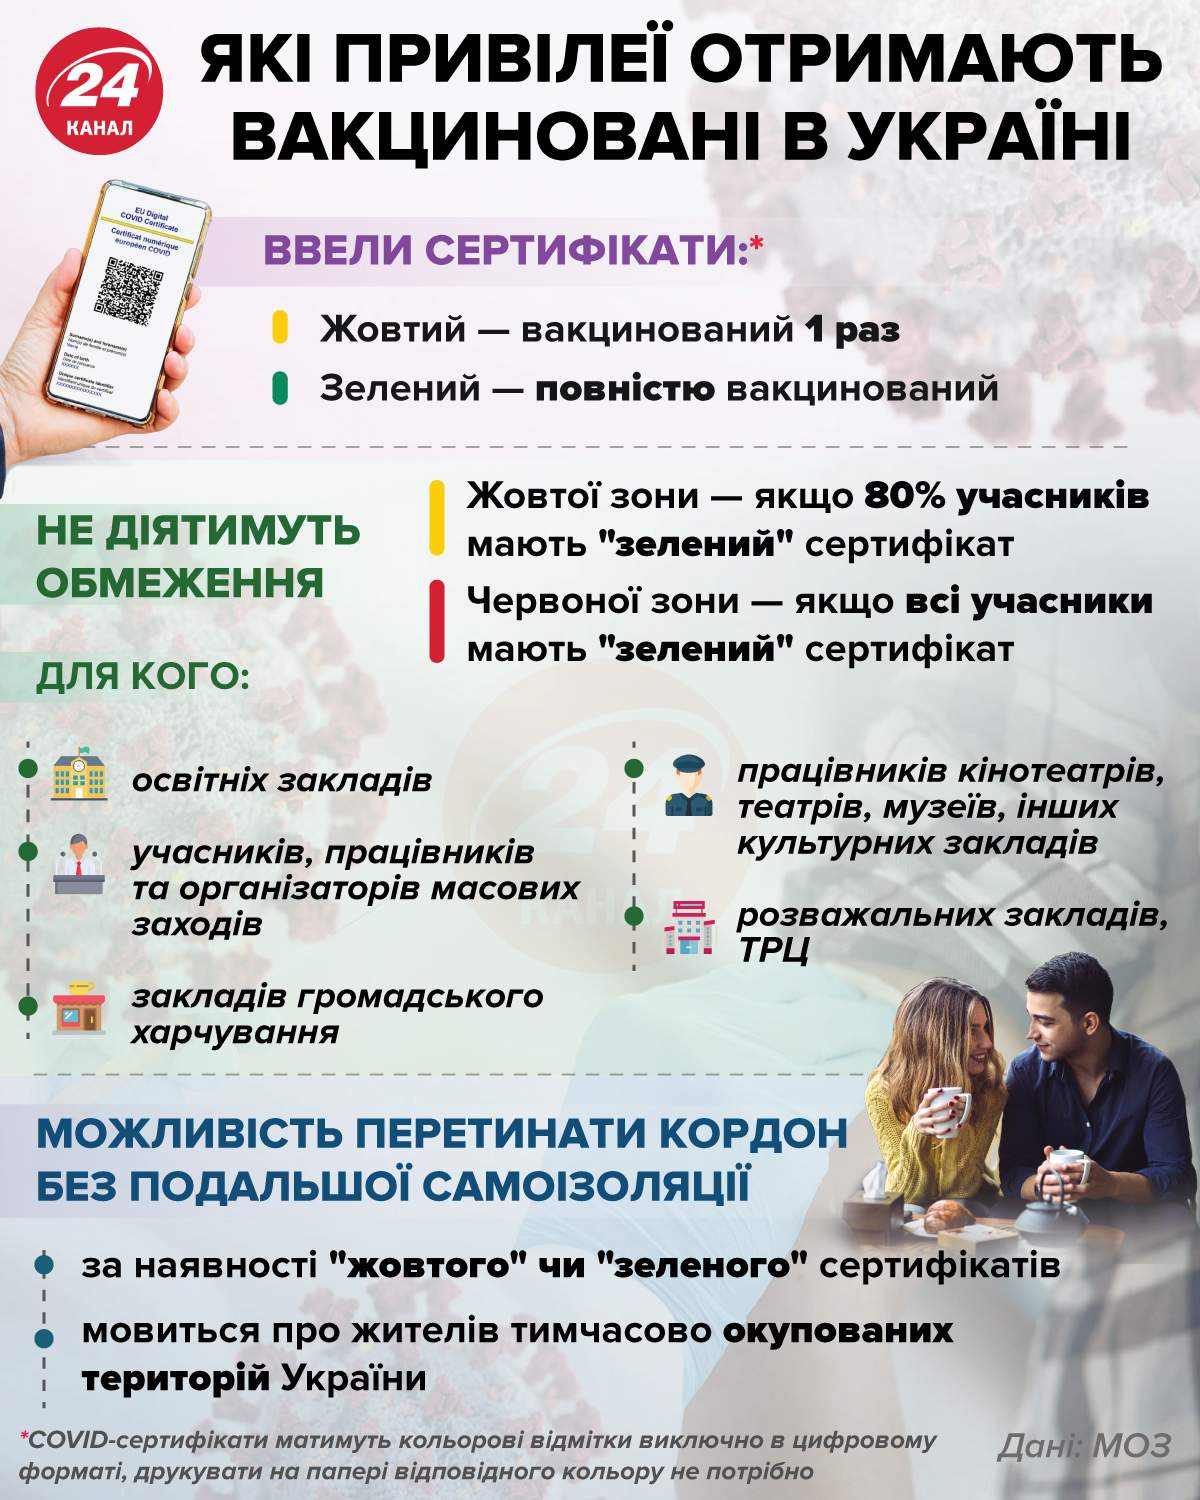 Які привілеї отримають вакциновані українці / Інфографіка 24 каналу